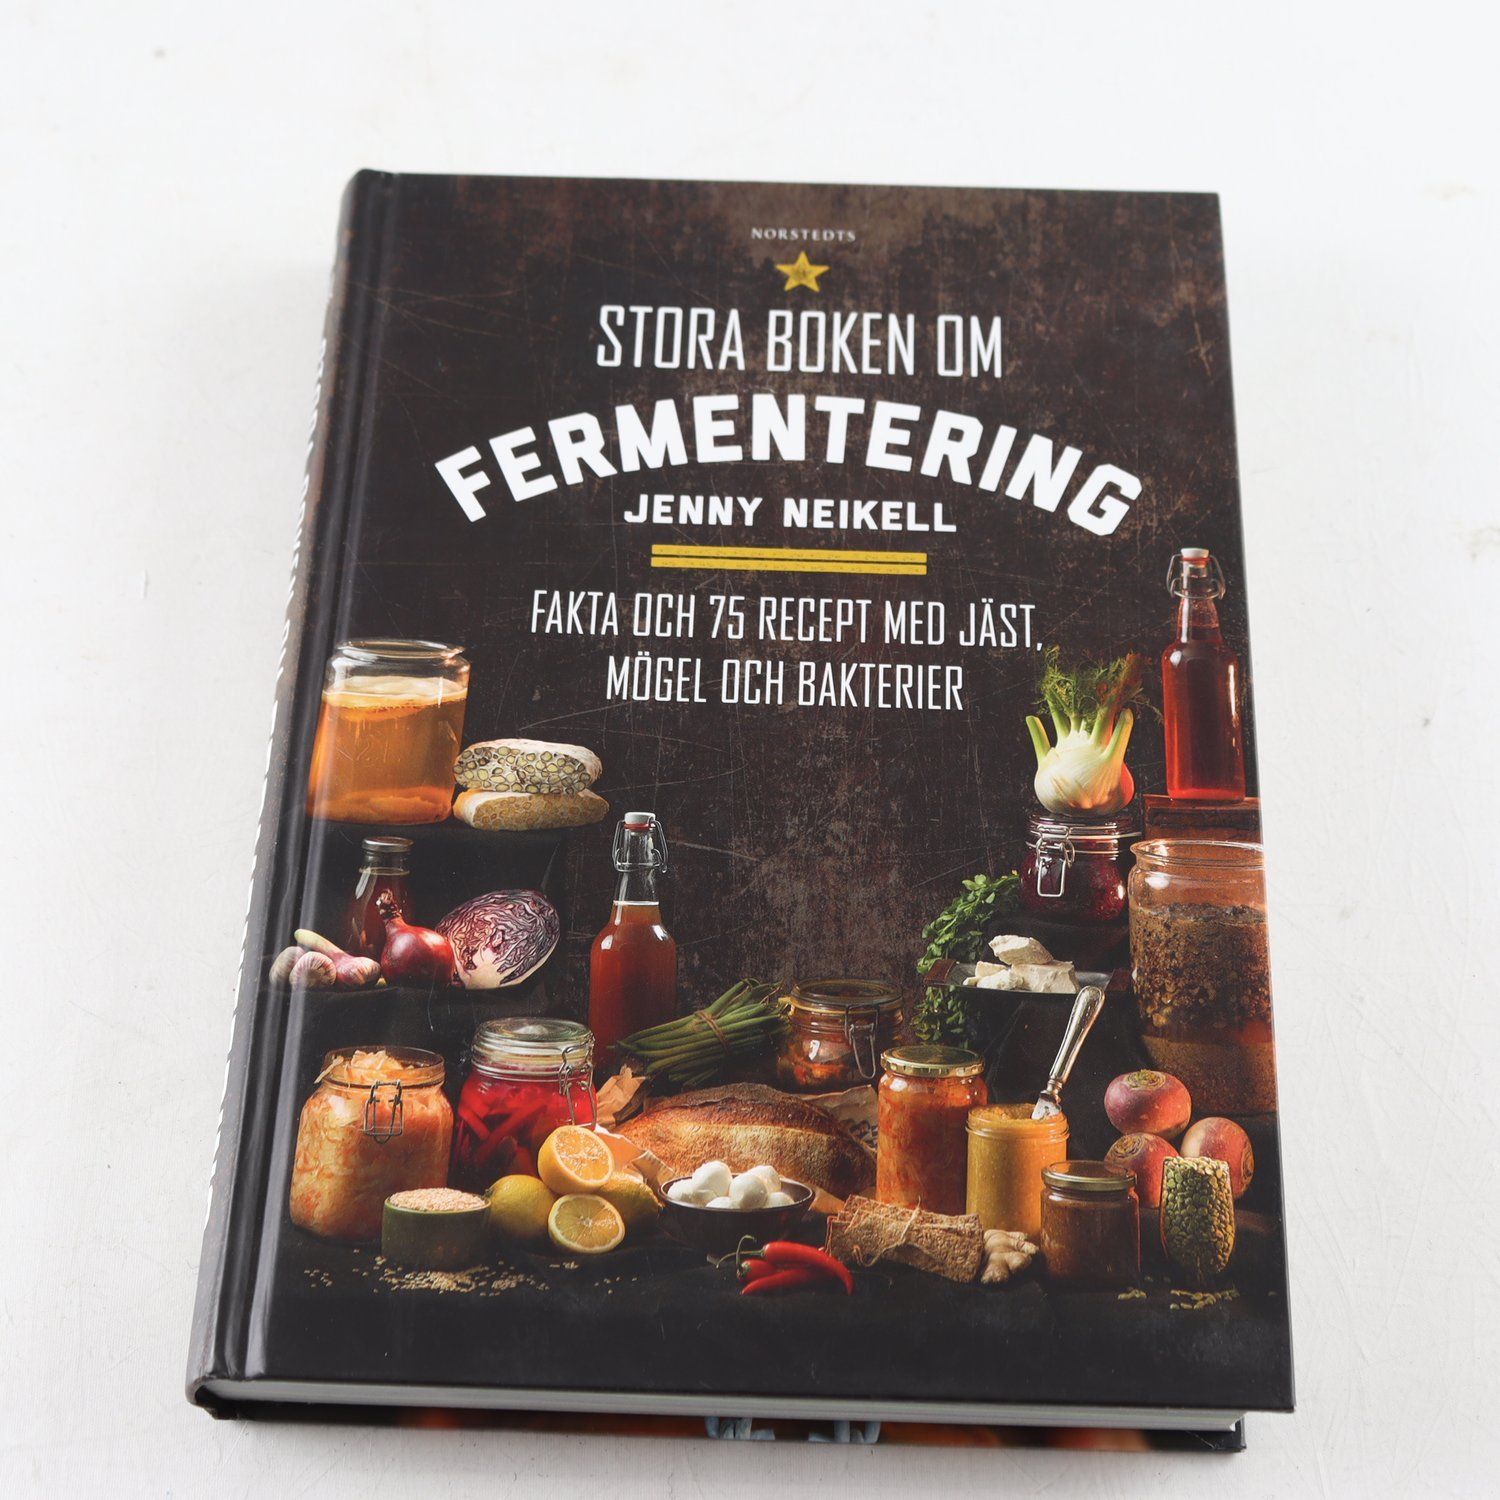 Stora boken om fermentering: Fakta och 75 recept